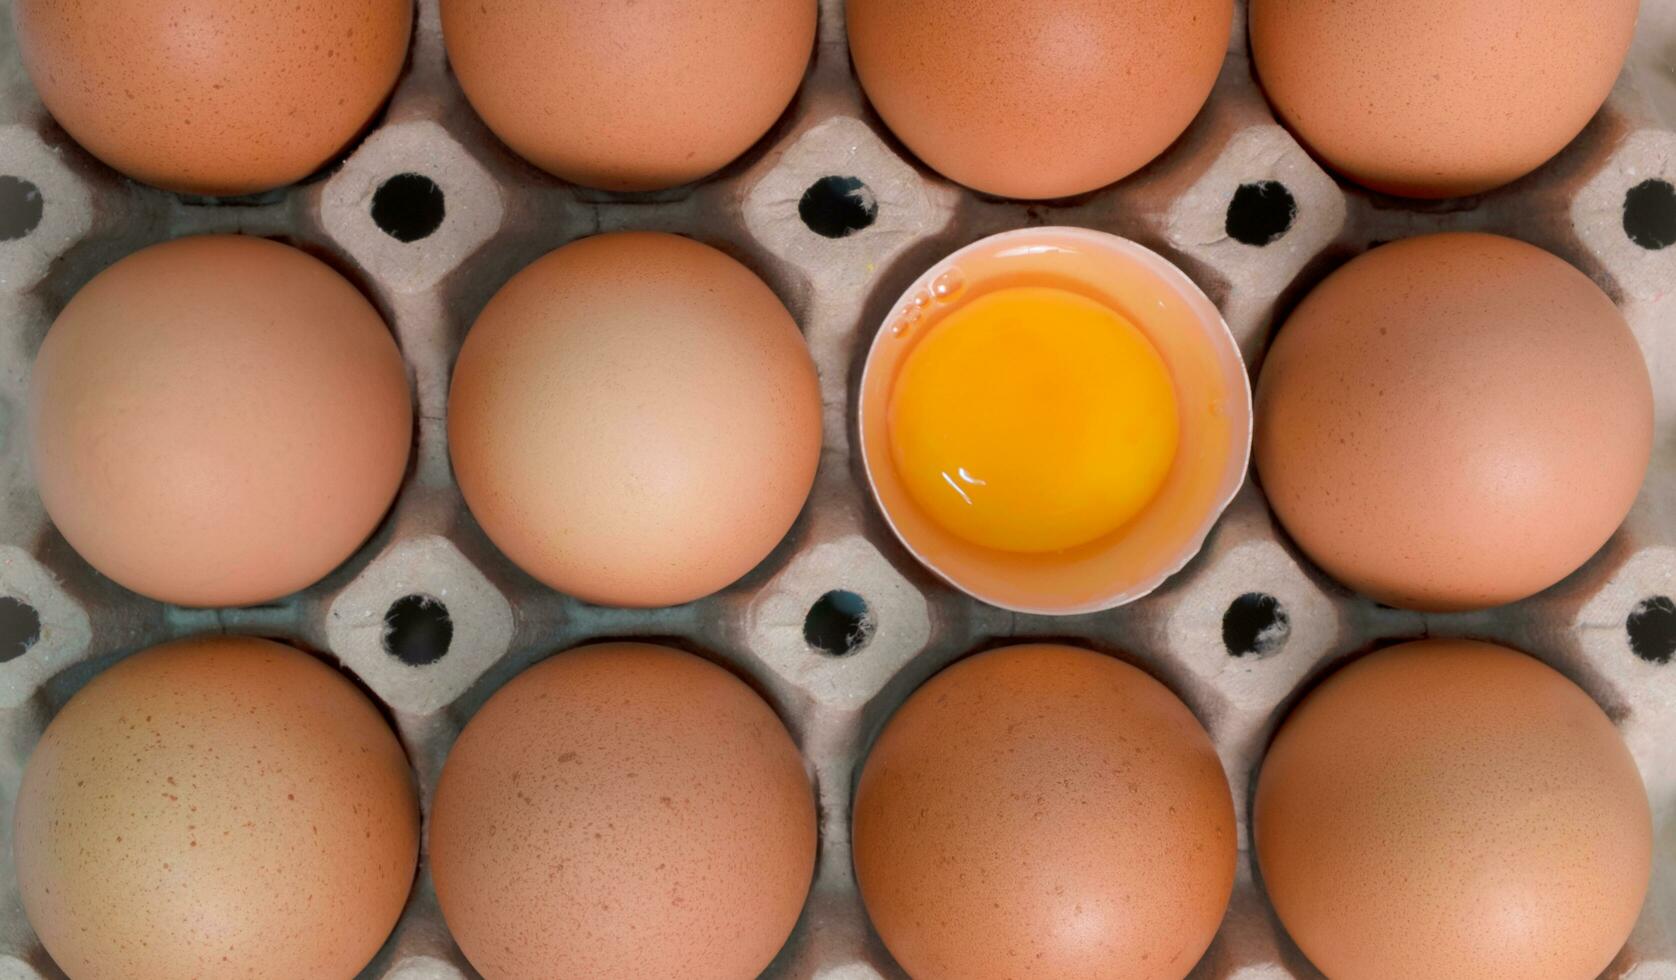 ägg bricka med färsk brun ägg och halvt trasig ägg, färsk organisk kyckling ägg i kartong låda. foto